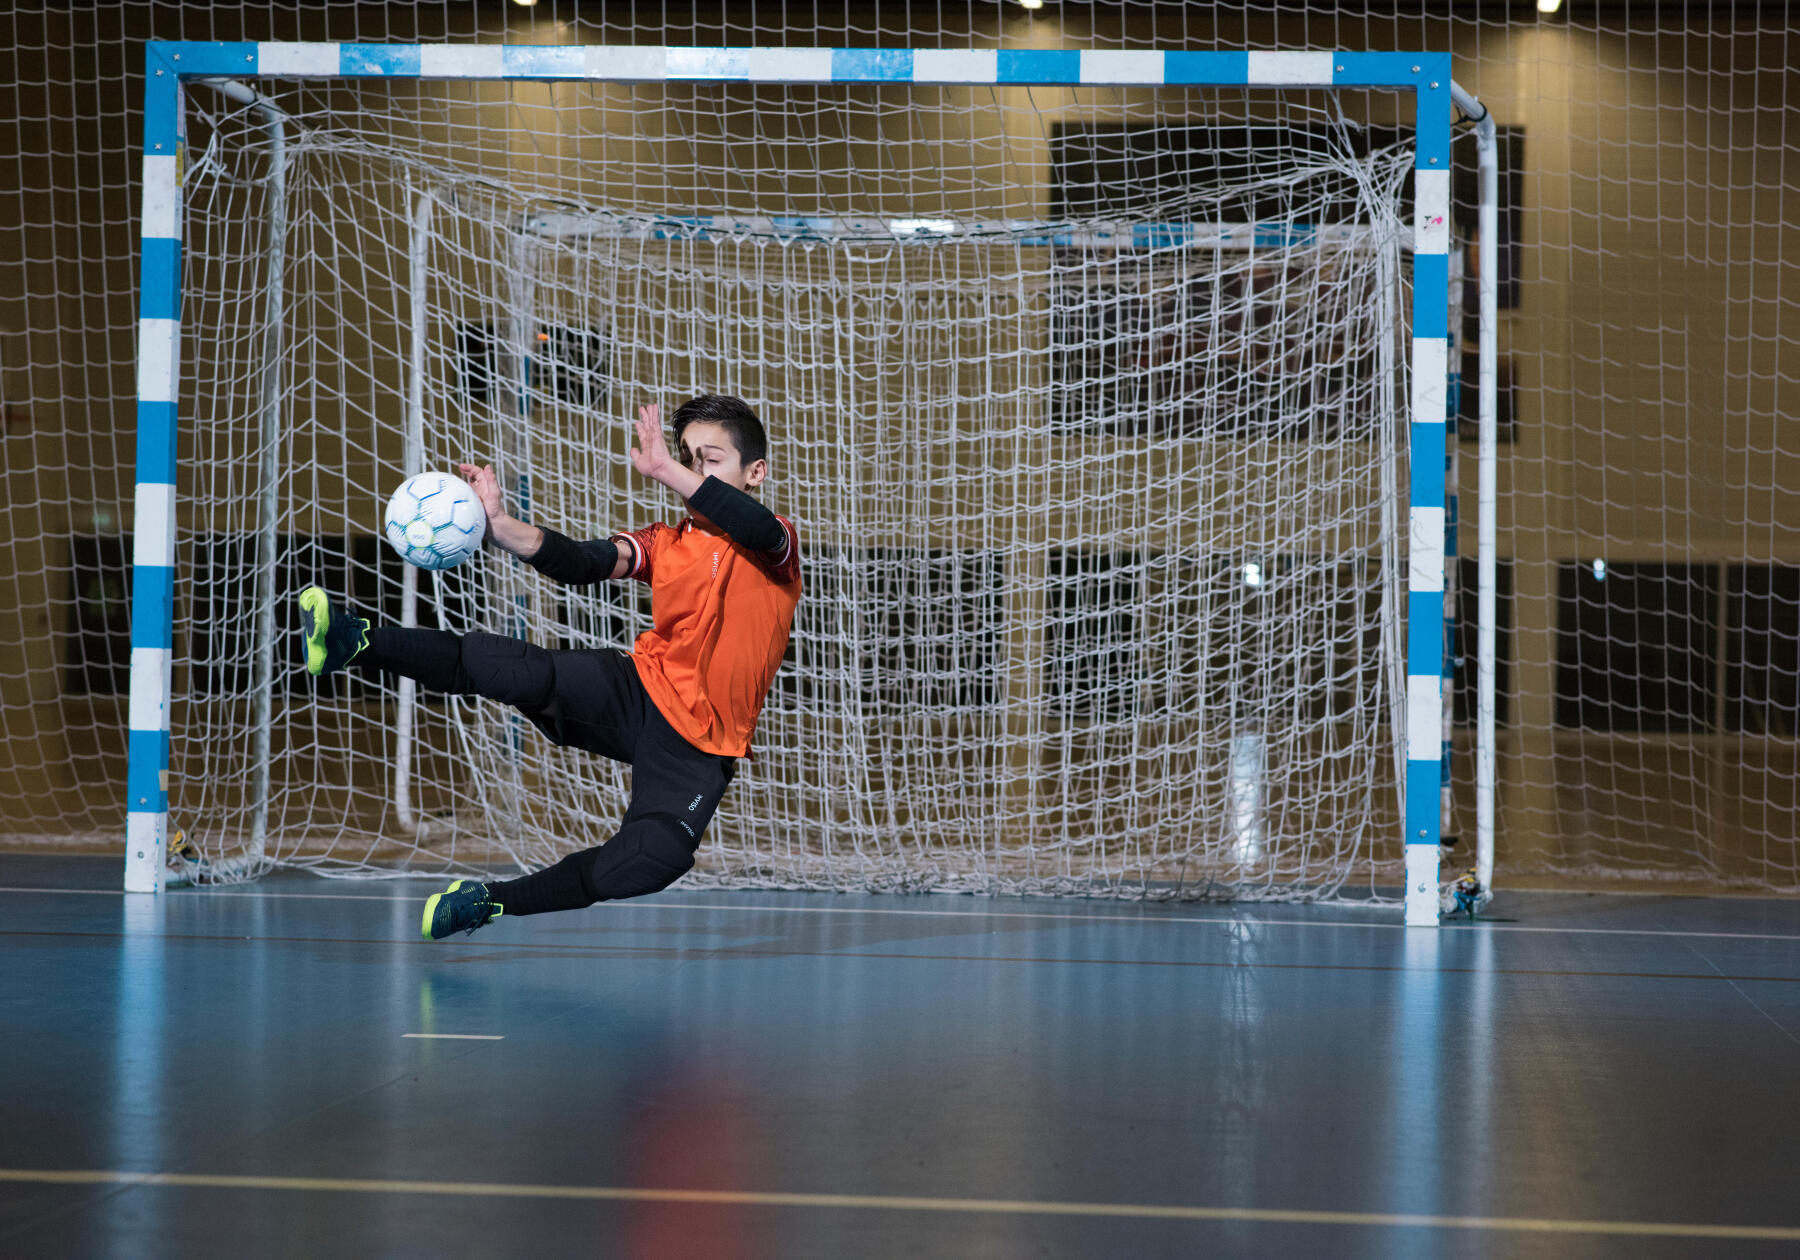 Spécial Futsal: Le Futsal pour un mental en acier trempé